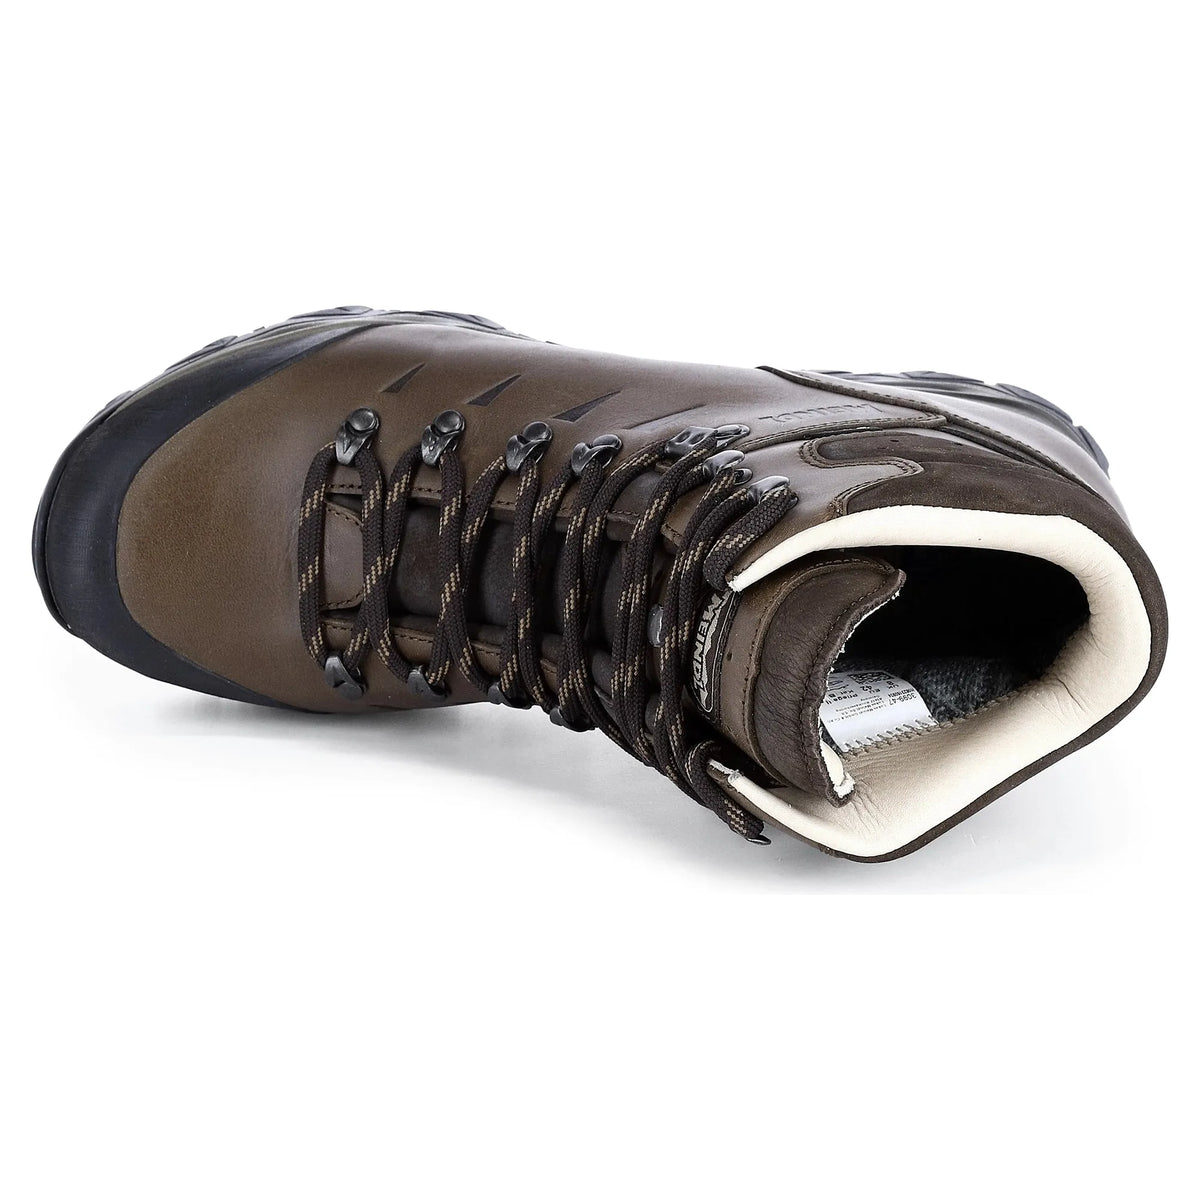 Meindl Chile GTX Walking Boots - Dark Brown